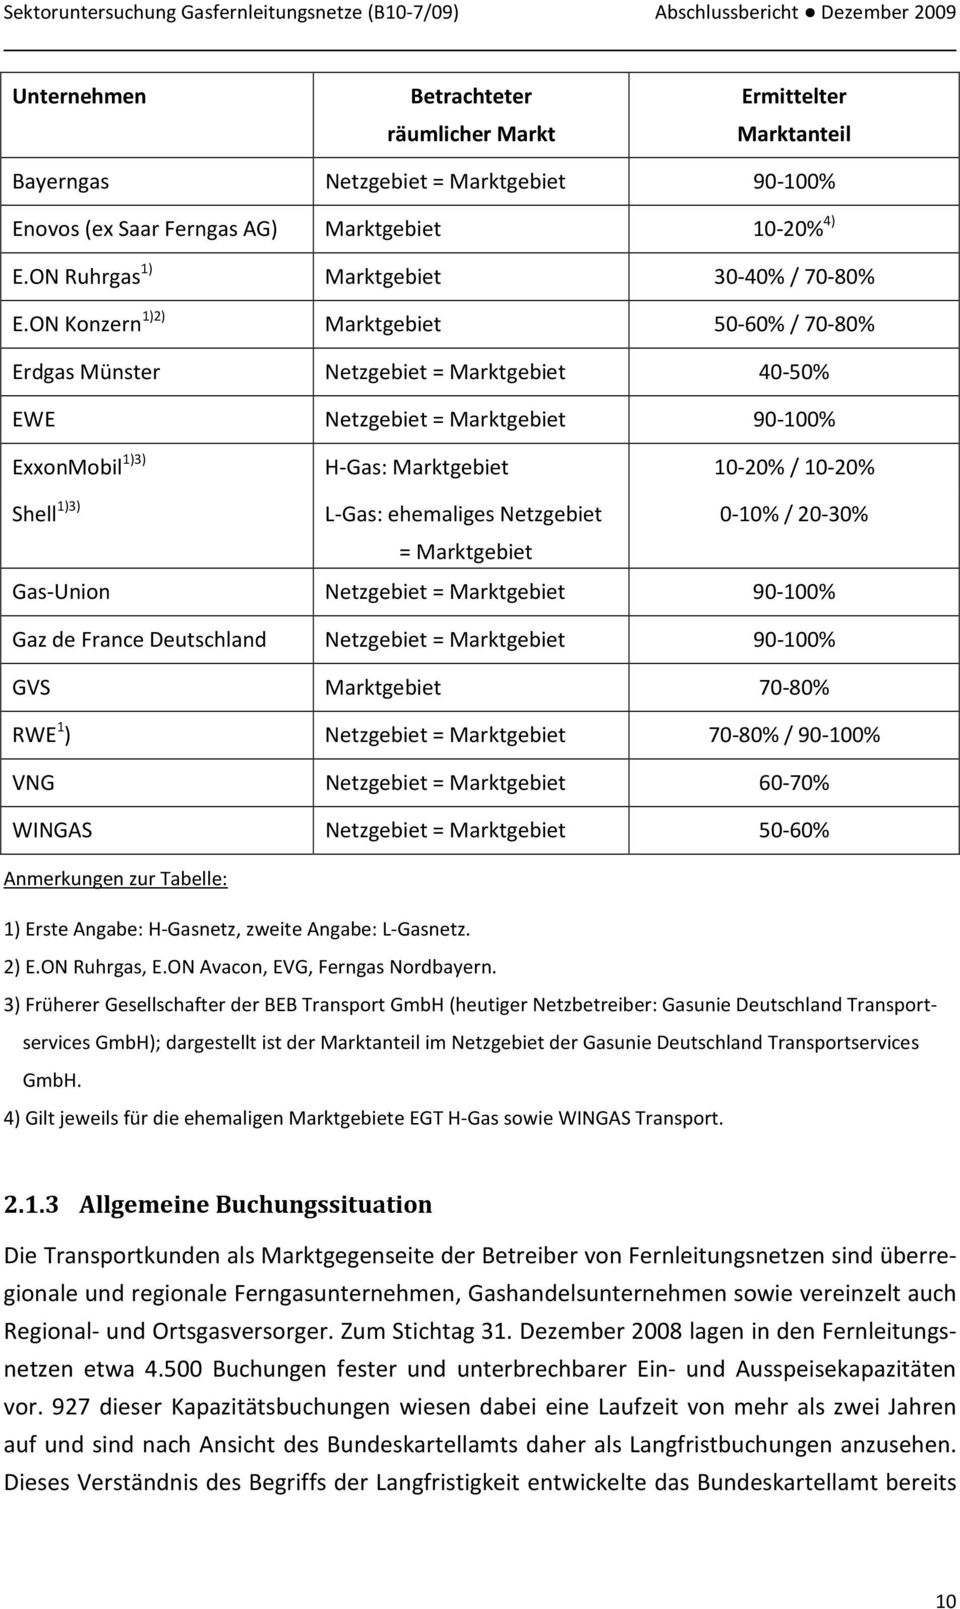 ON Konzern 1)2) Marktgebiet 50-60% / 70-80% Erdgas Münster Netzgebiet = Marktgebiet 40-50% EWE Netzgebiet = Marktgebiet 90-100% ExxonMobil 1)3) H-Gas: Marktgebiet 10-20% / 10-20% Shell 1)3) L-Gas: